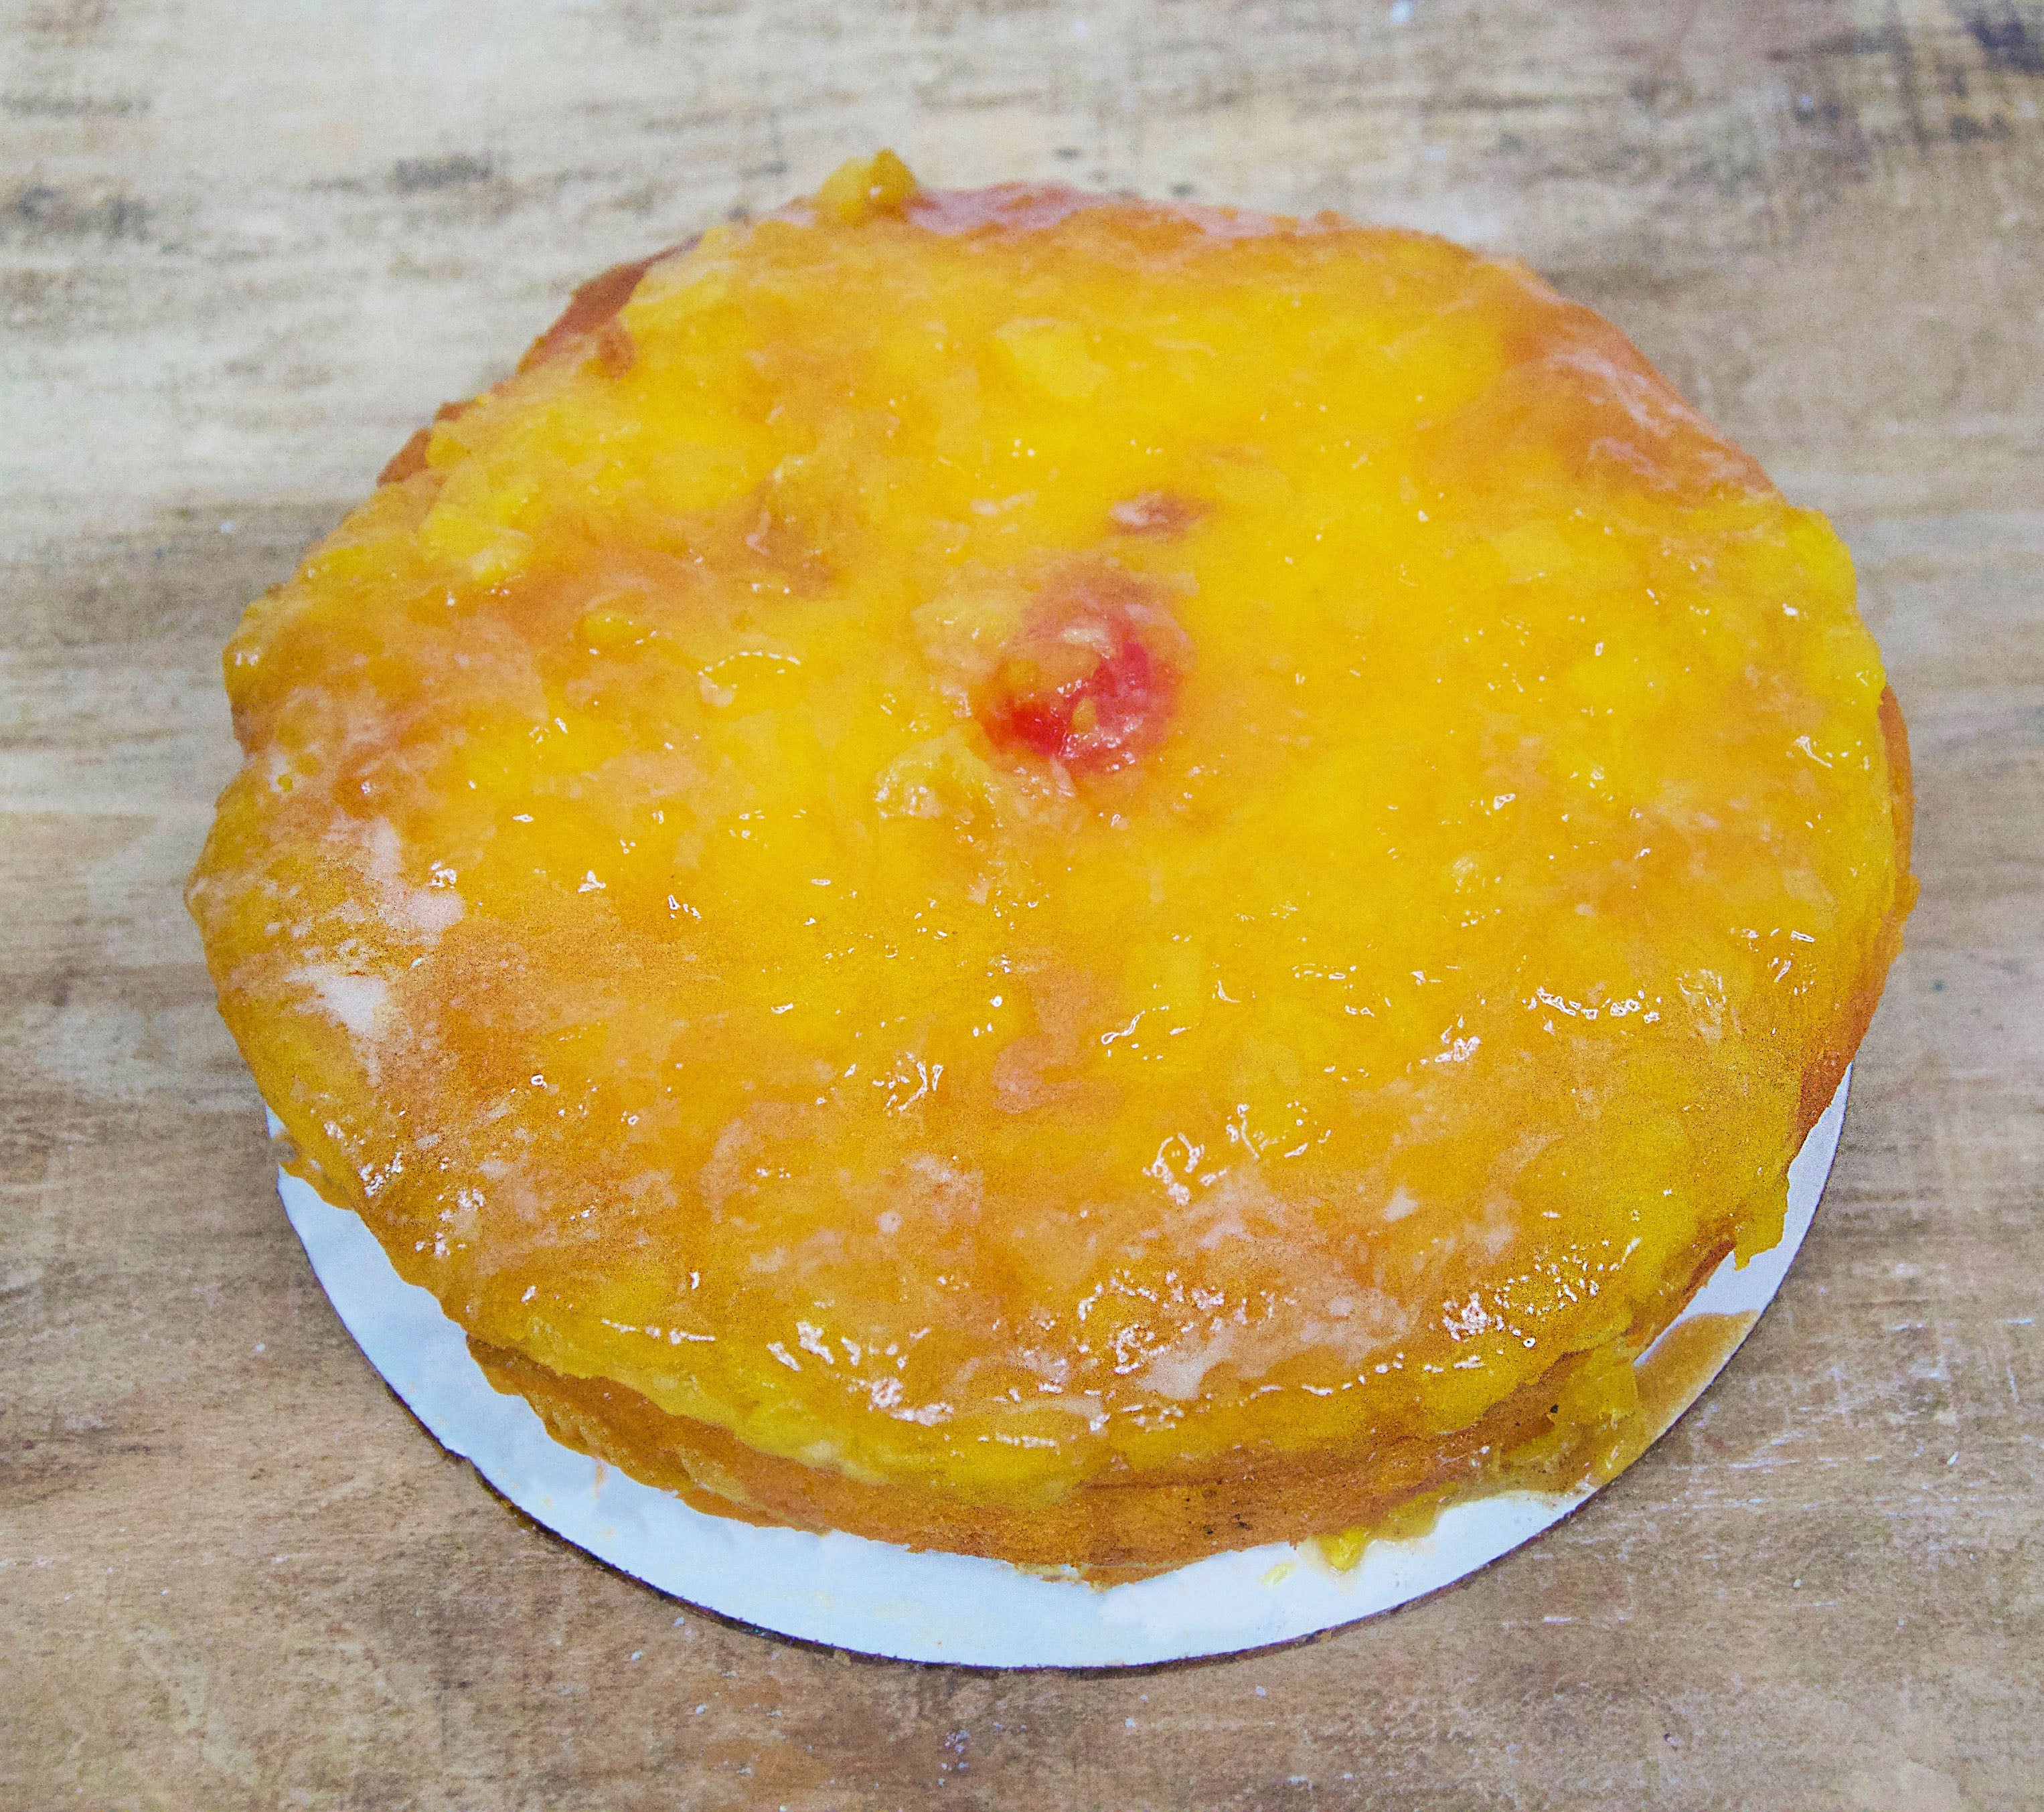 McArthur's Bakery Pineapple Upside Down Cake 